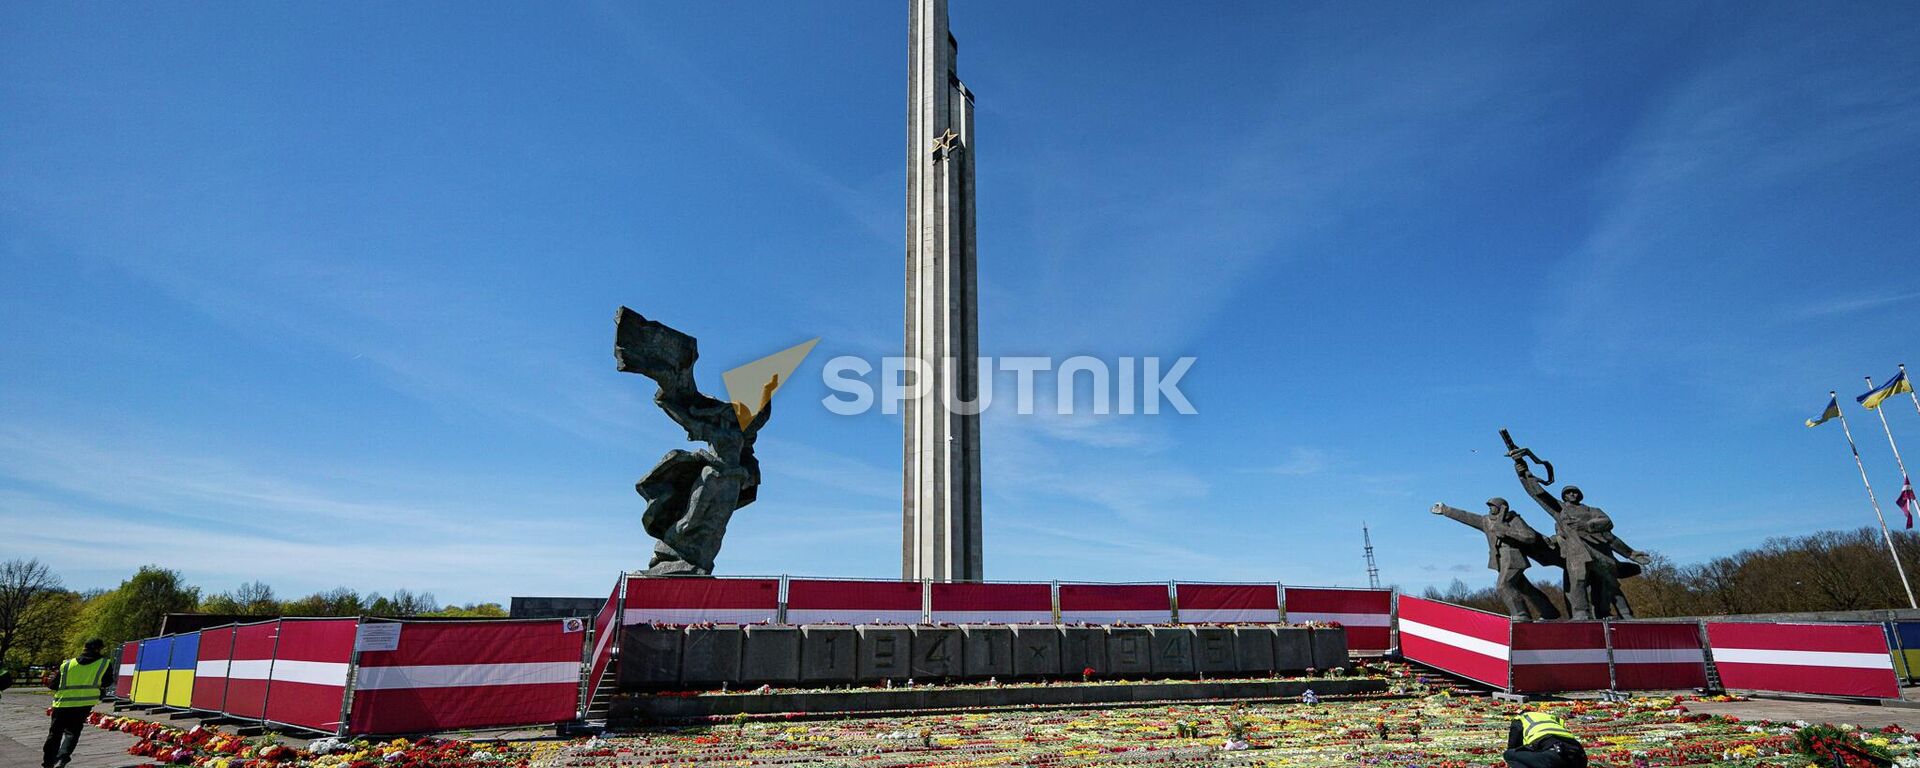 Обстановка у памятника Освободителям в Риге 9 мая 2022 года - Sputnik Латвия, 1920, 03.08.2022